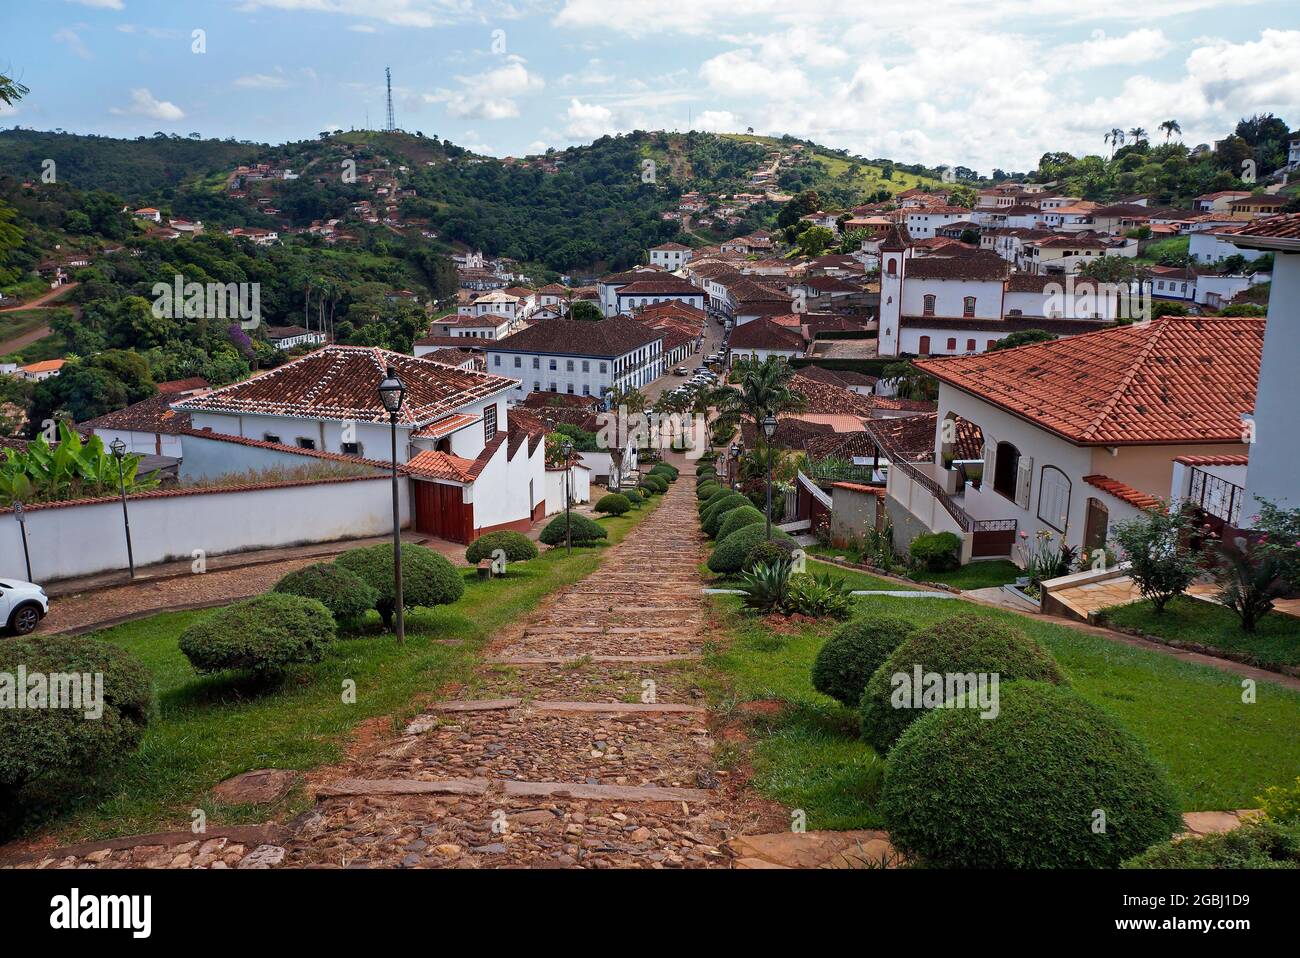 Vista parcial de Serro, ciudad histórica en Minas Gerais, Brasil Foto de stock